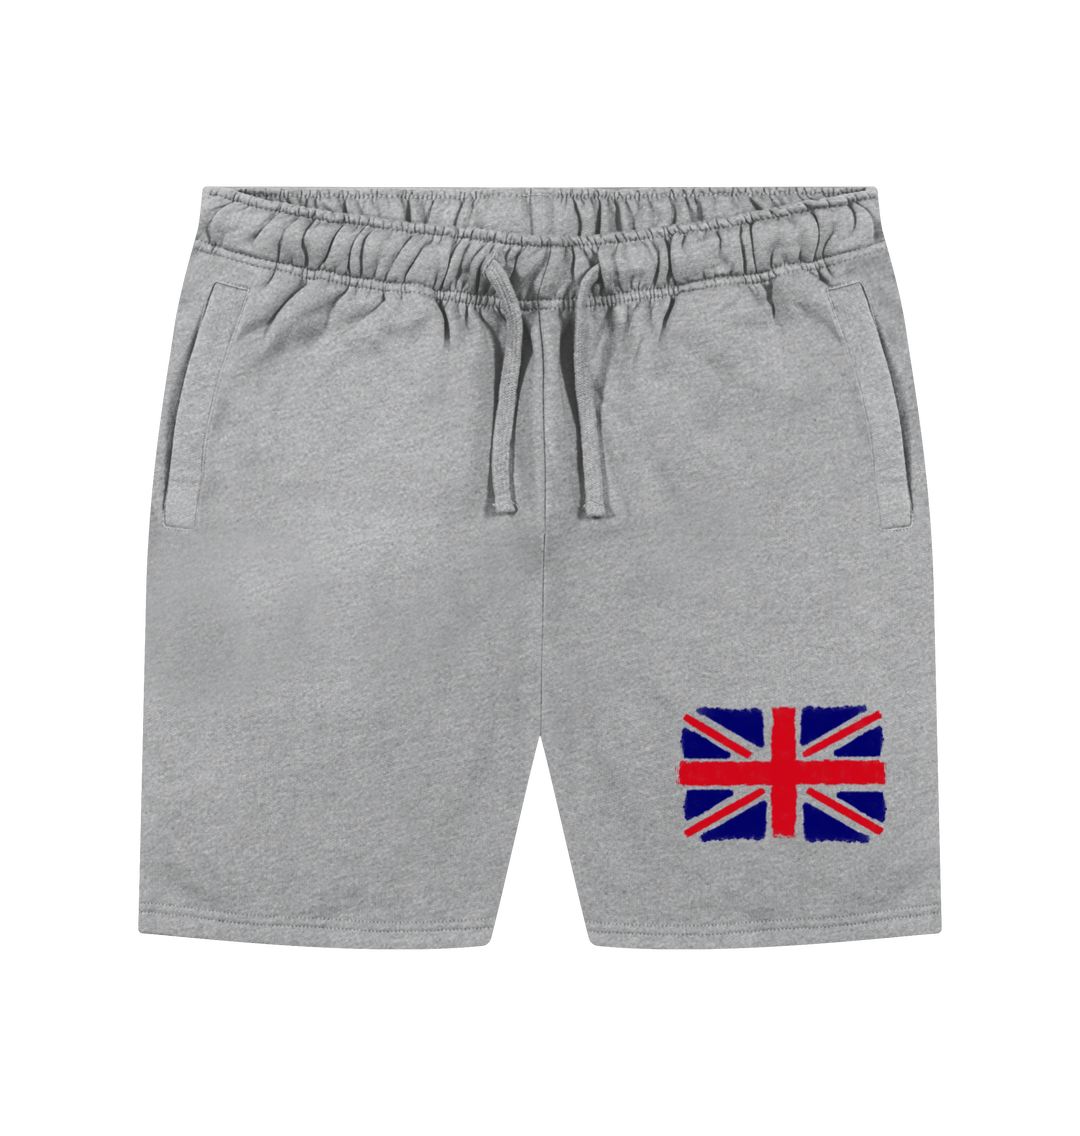 Athletic Grey Union Jack Men's Shorts